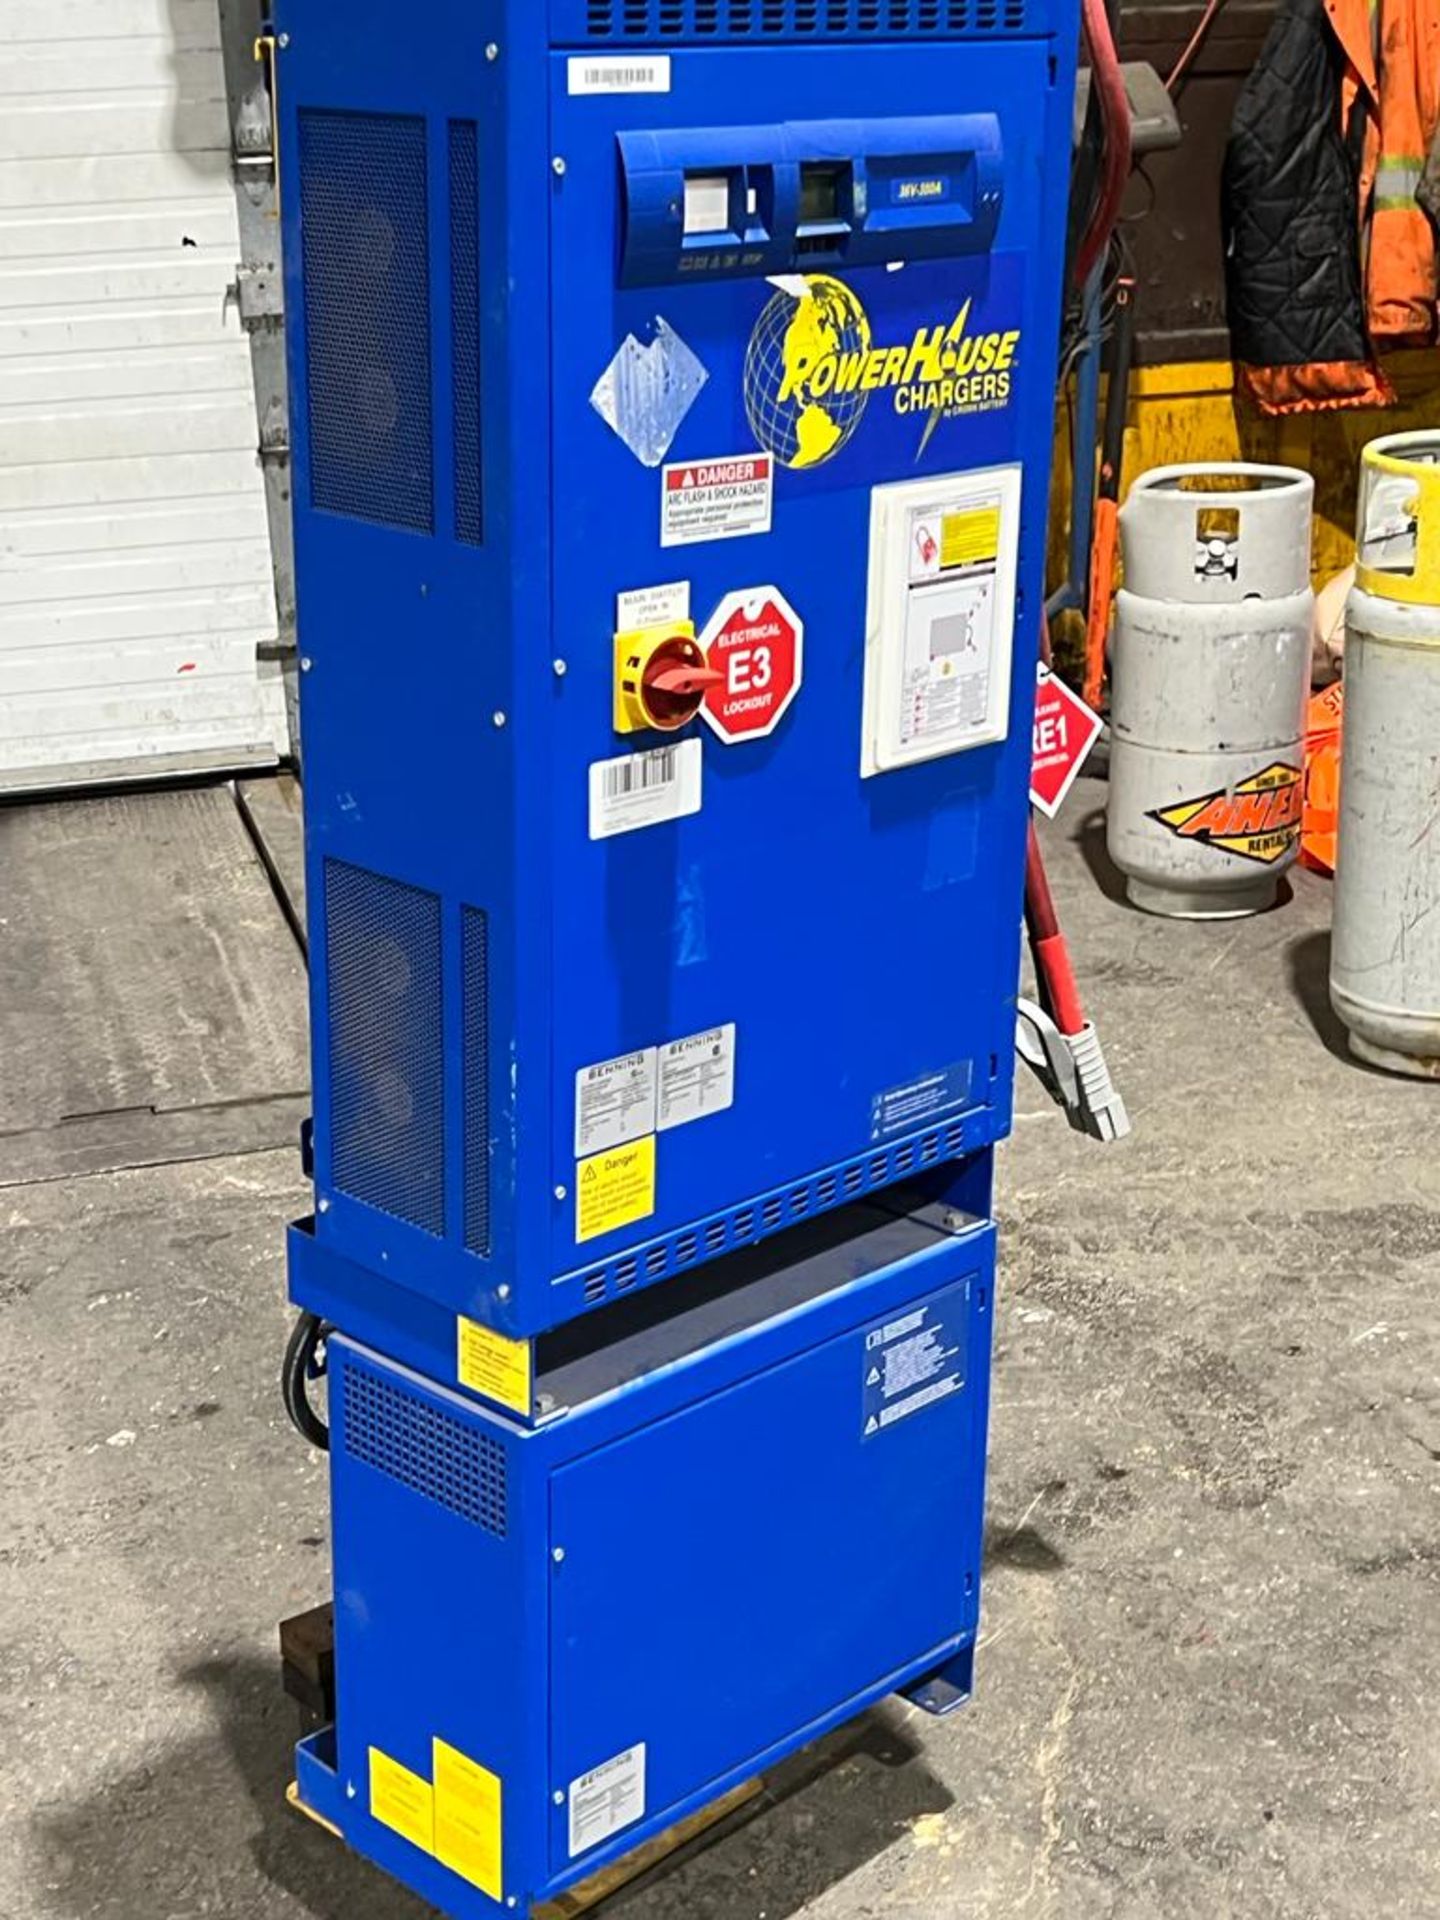 Benning Forklift Battery Charger - 36V - 3 phase input 600V & transformer to 480V on pedestal